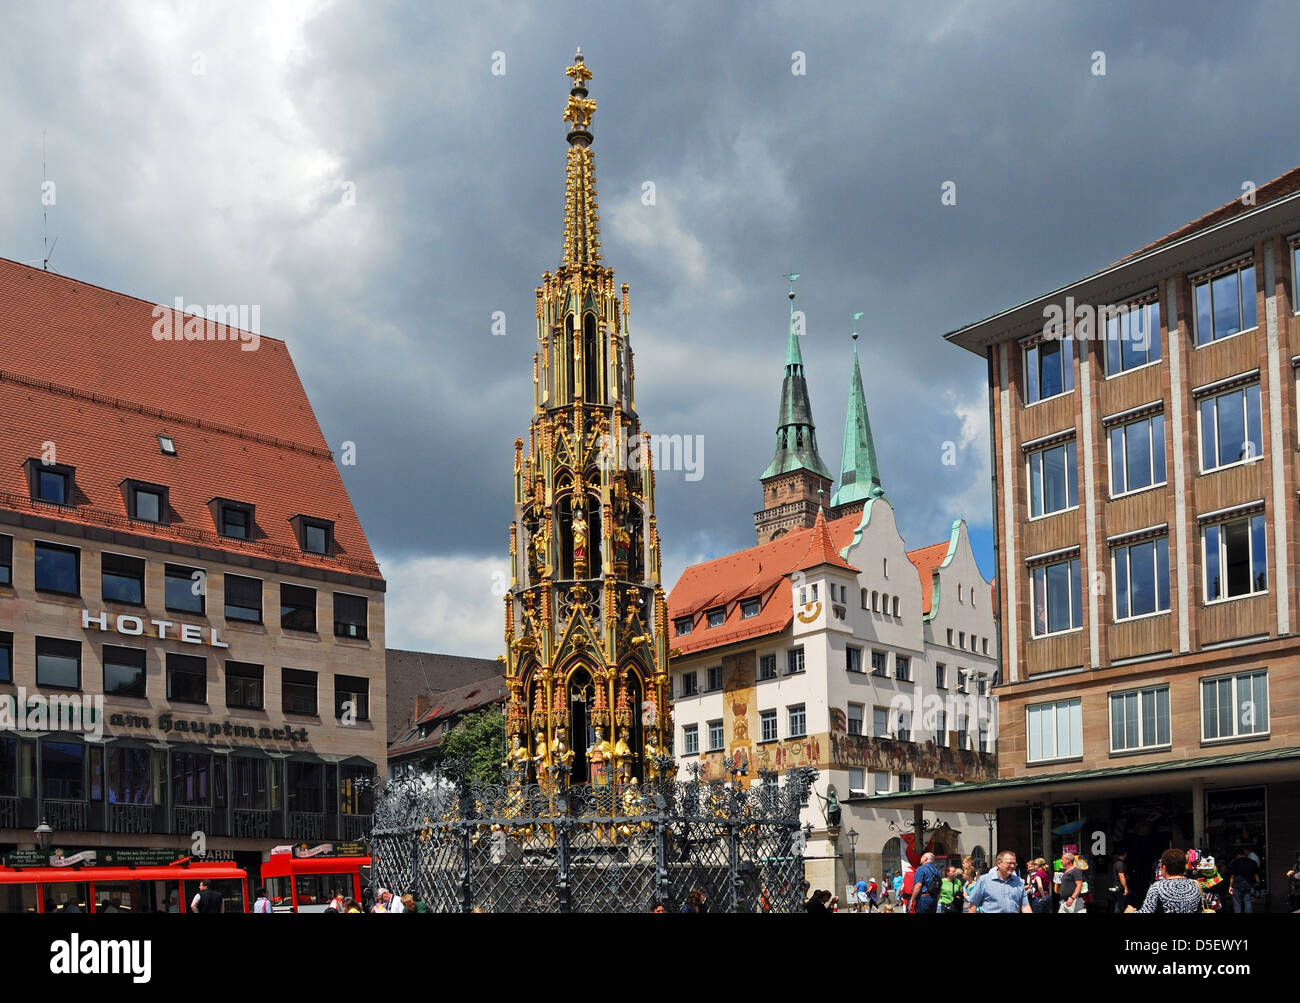 Schoner Brunnen (belle fontaine) sur le marché principal, Nuremberg, Bavière, Allemagne, Europe de l'Ouest. Banque D'Images